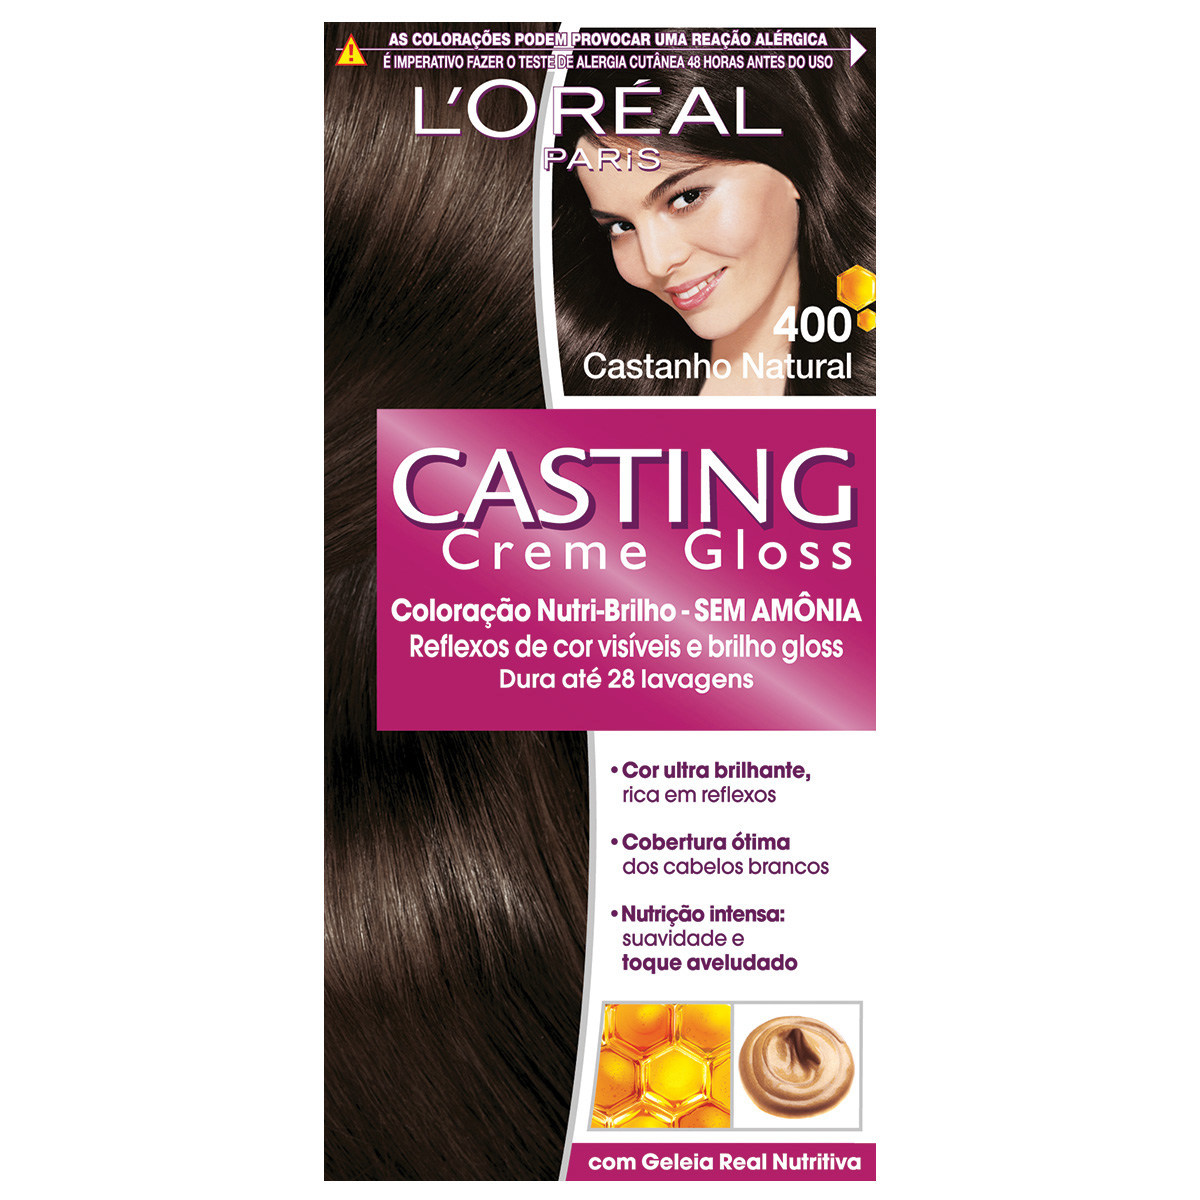 Coloração Permanente Casting Creme Gloss N° 400 Castanho Natural L'Oréal 1 Unidade